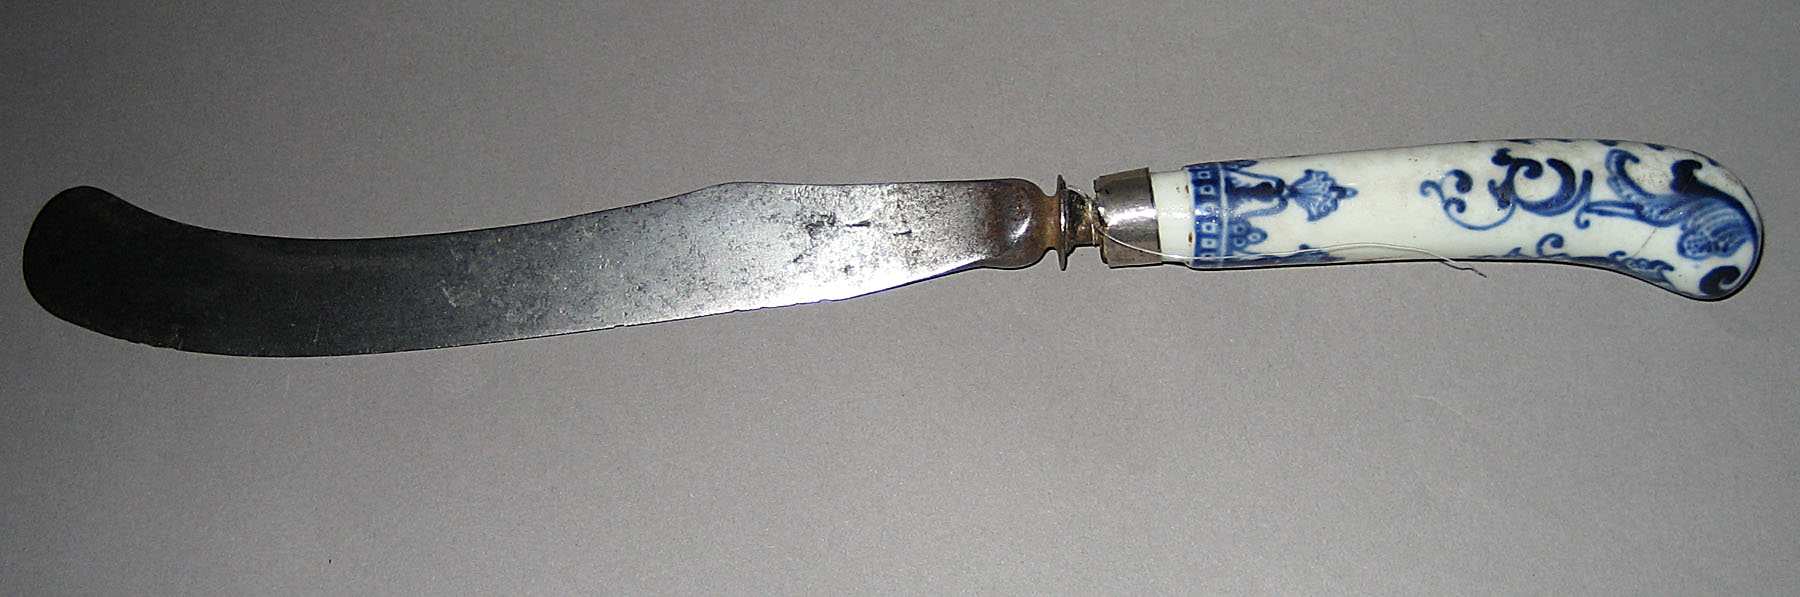 1964.0570.002 Knife